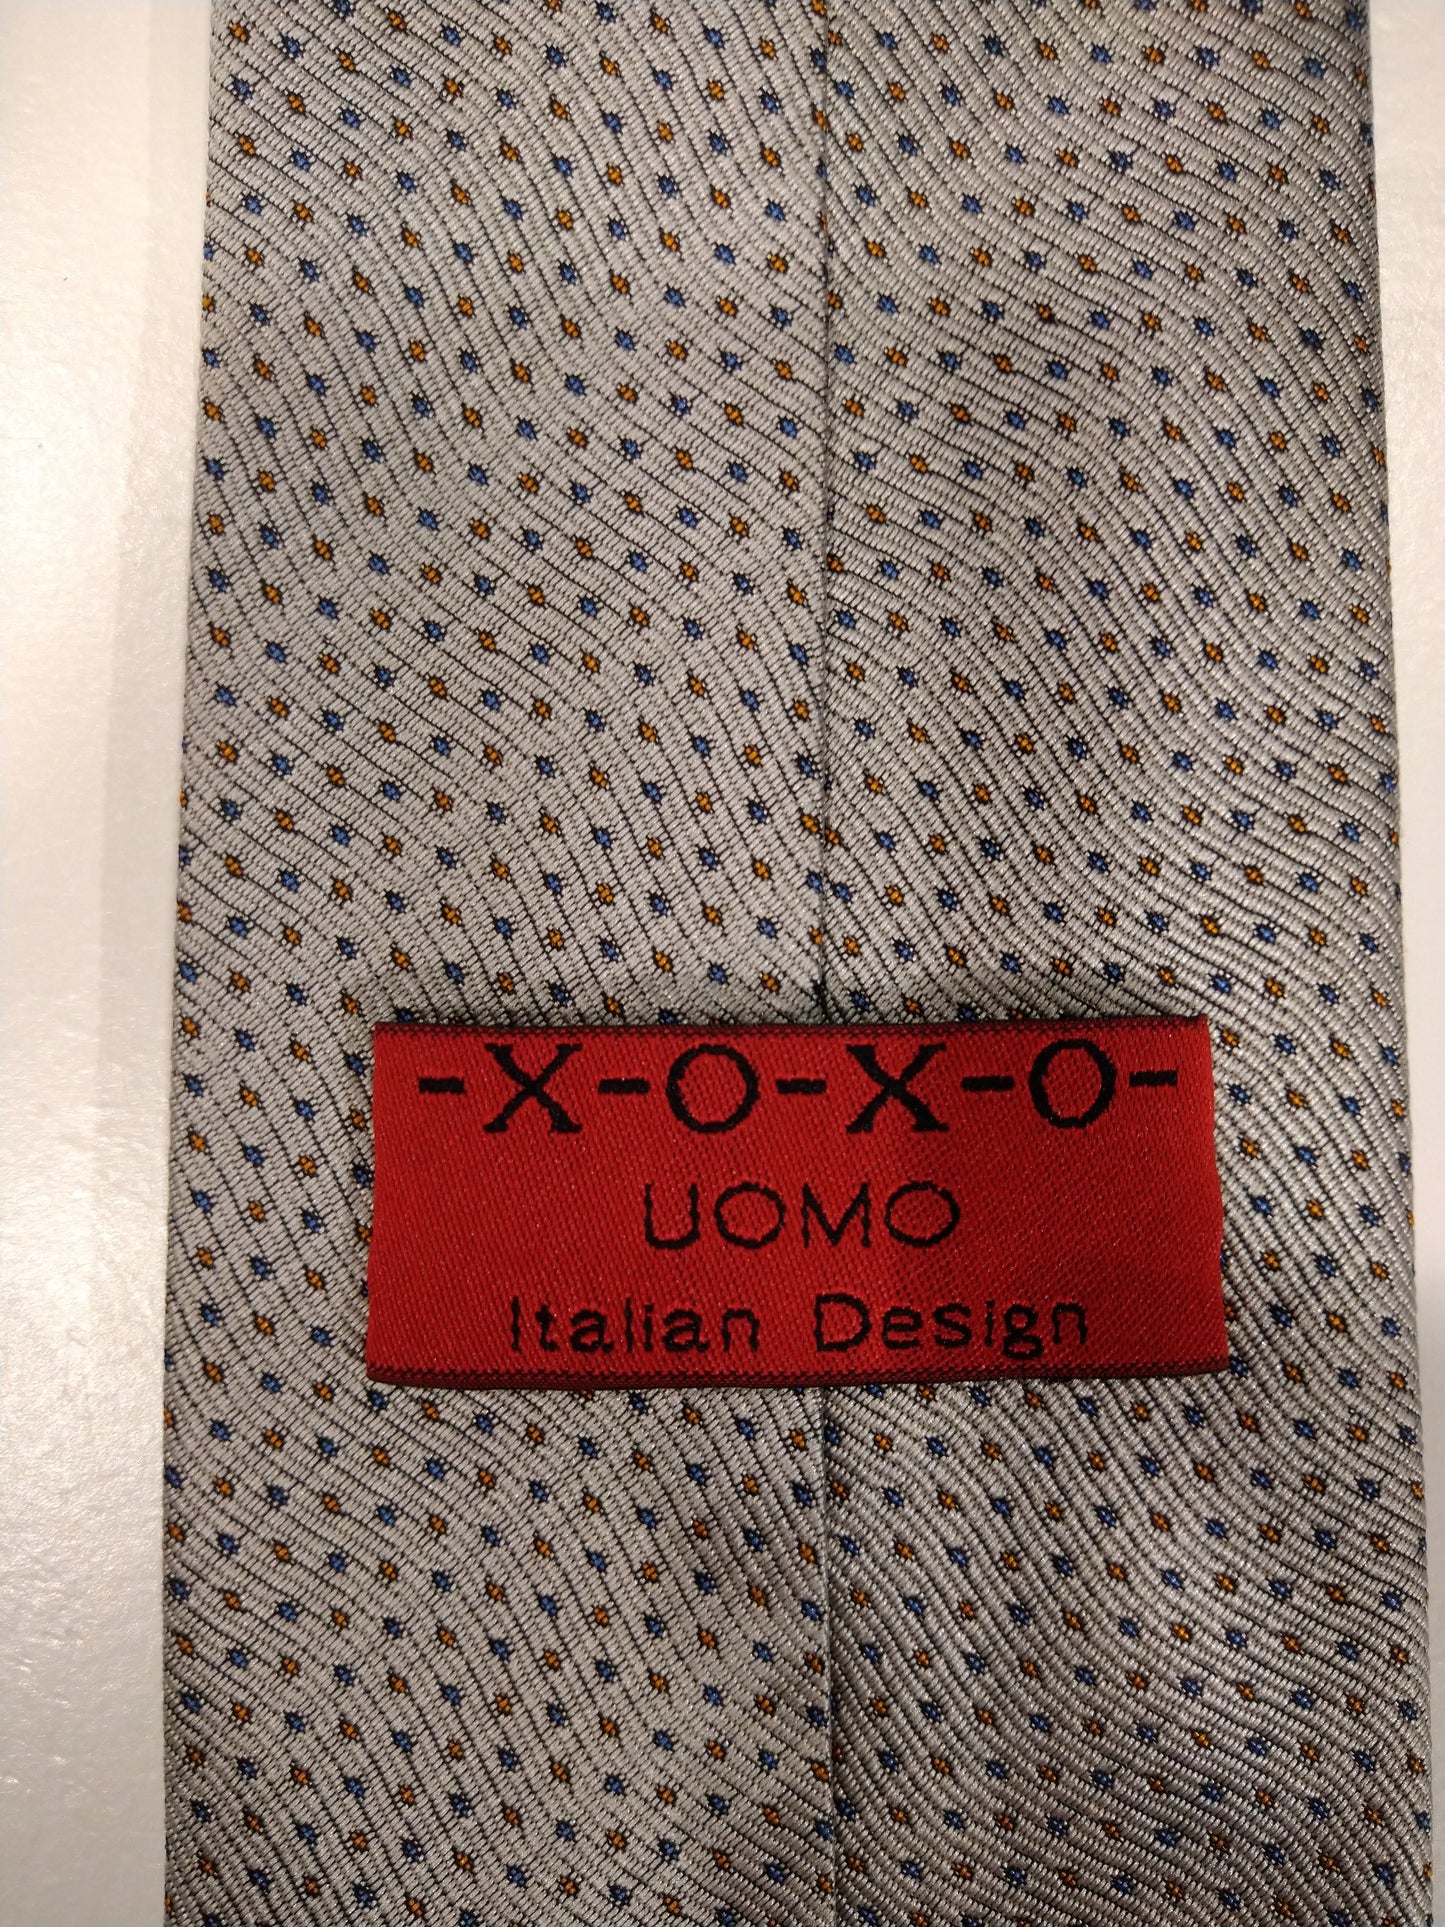 Cravatta di design italiano x-o-x-o. Beige con motivo a sfere blu / marrone.